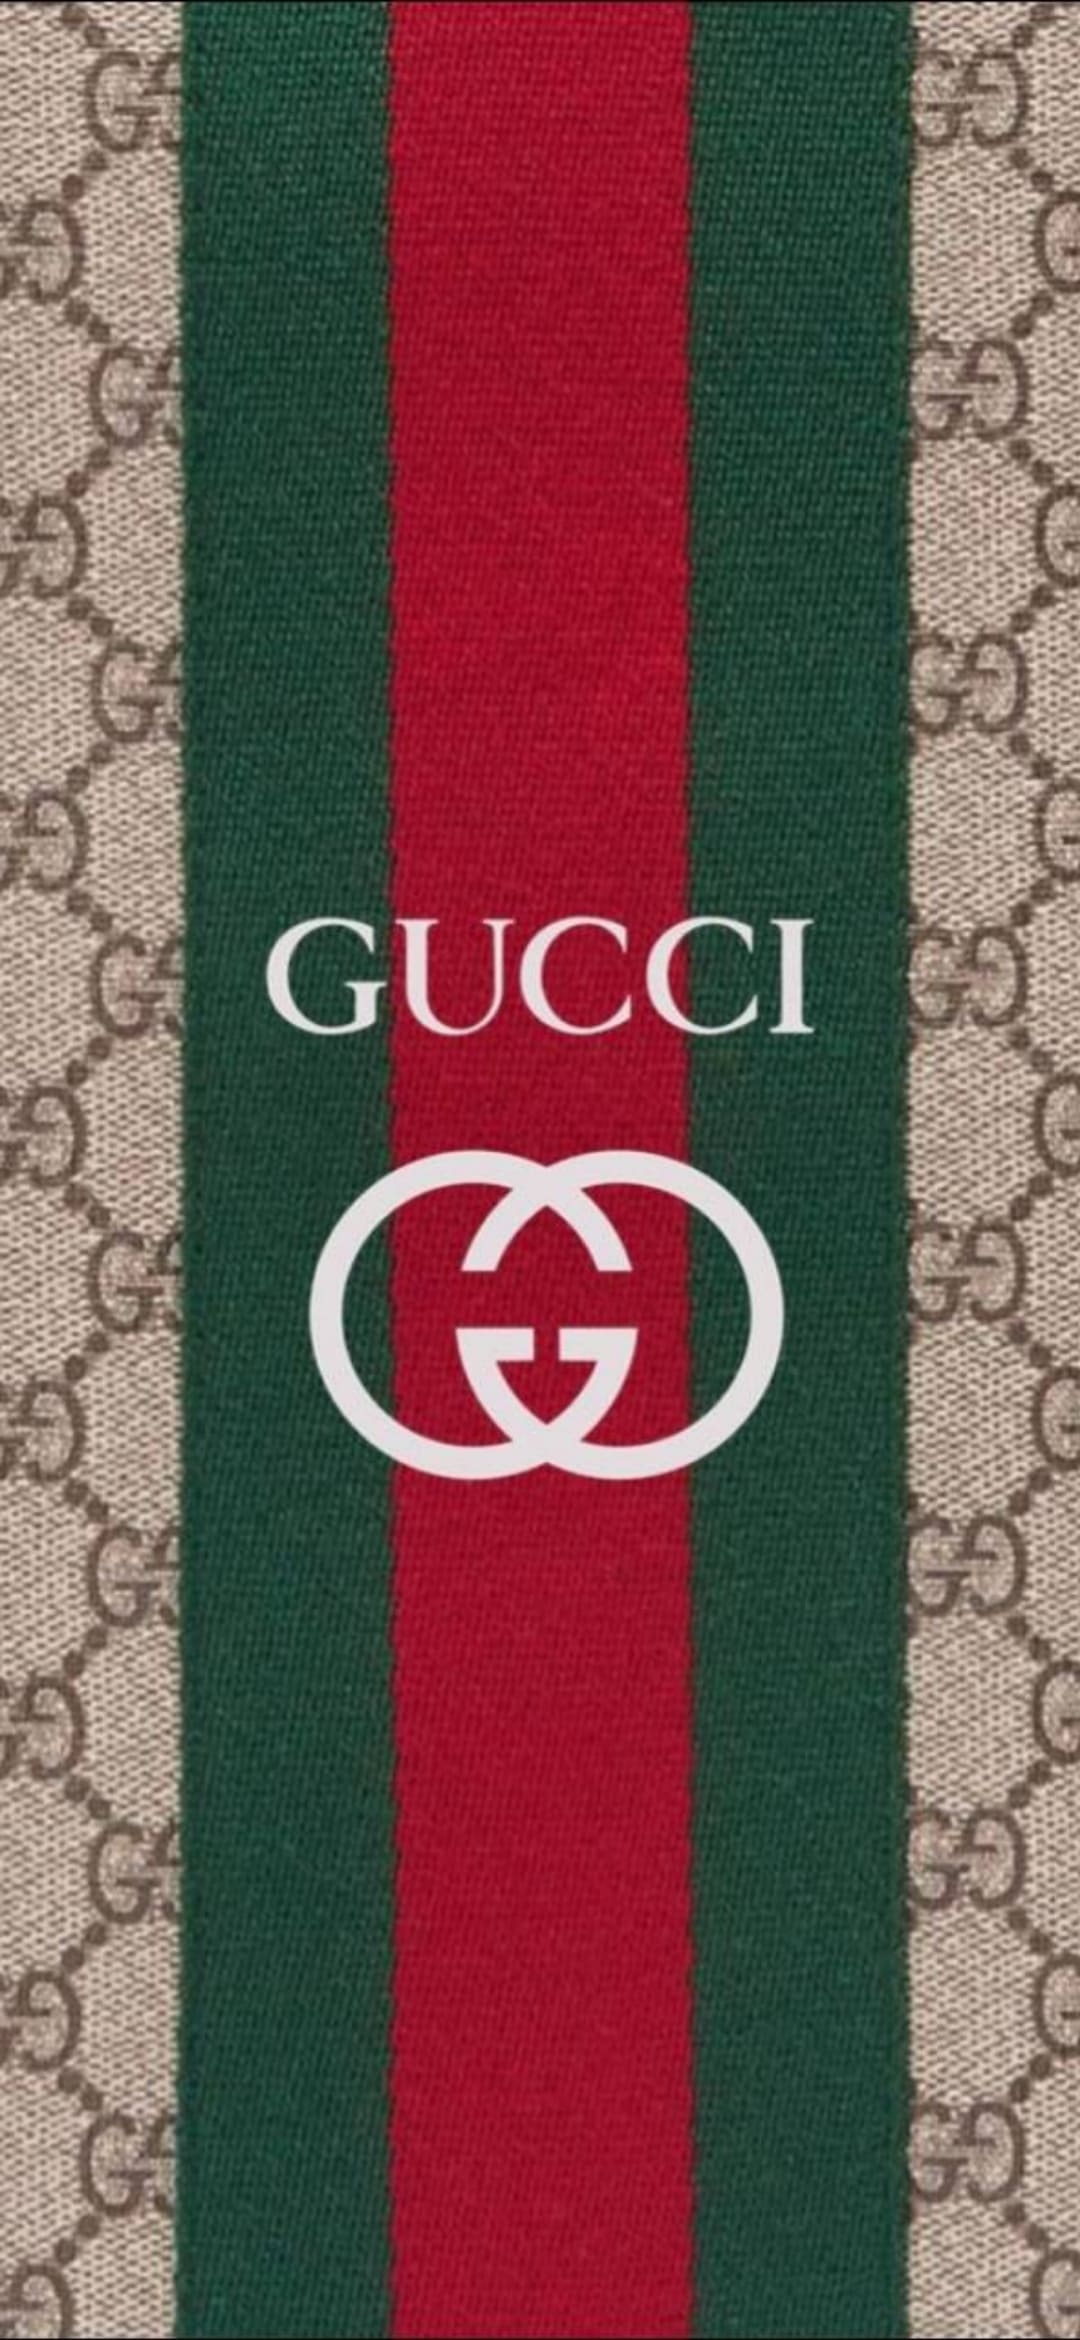 Chỉ với một thao tác đơn giản, bạn có thể truy cập ngay trang web Gucci.com để tìm kiếm những hình nền độc đáo và chất lượng nhất từ Gucci. Với những bộ sưu tập được cập nhật thường xuyên, hình nền Gucci mang tới cho bạn sự sang trọng và tinh tế mà không thể bỏ qua. Hãy truy cập ngay để khám phá và làm mới giao diện thiết bị của mình!